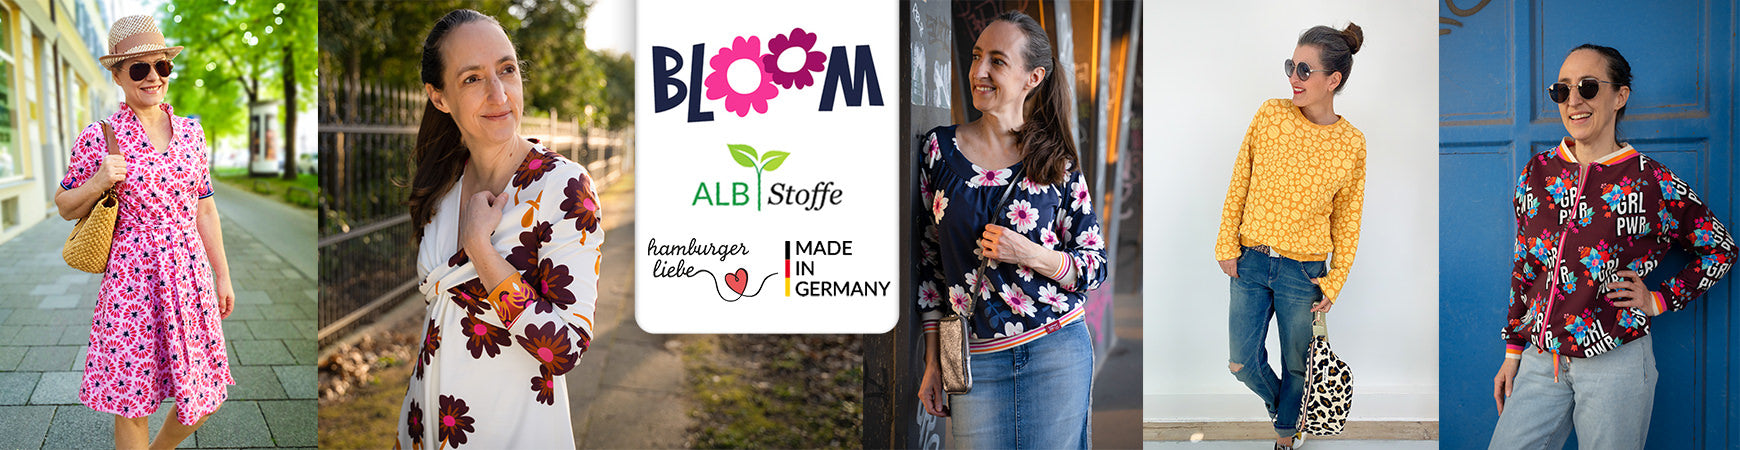 Bloom Kollektion von Hamburger Liebe für Albstoffe